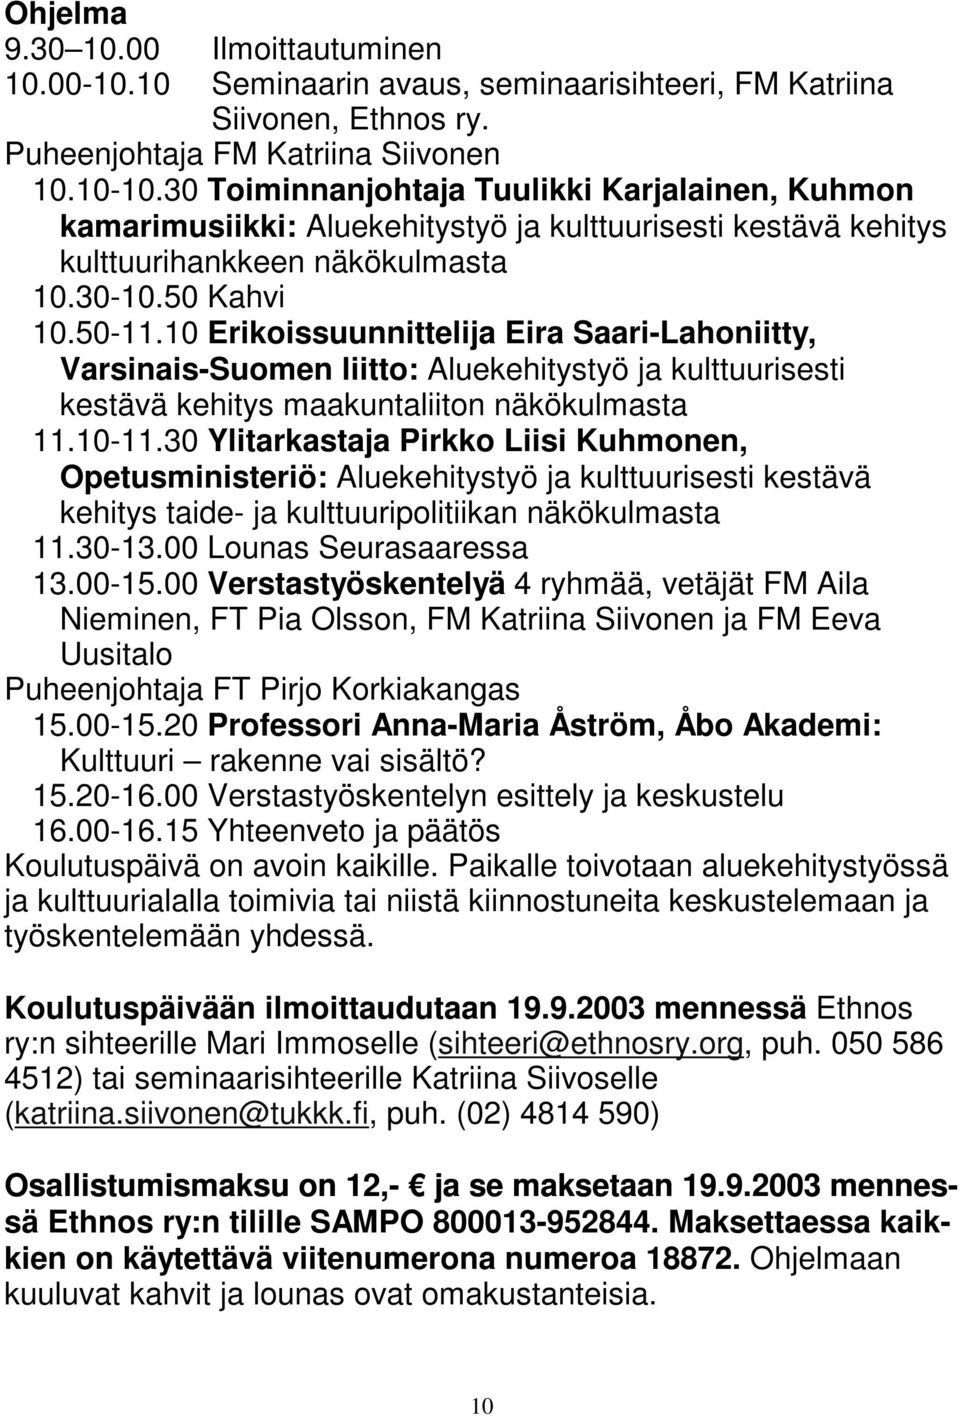 10 Erikoissuunnittelija Eira Saari-Lahoniitty, Varsinais-Suomen liitto: Aluekehitystyö ja kulttuurisesti kestävä kehitys maakuntaliiton näkökulmasta 11.10-11.